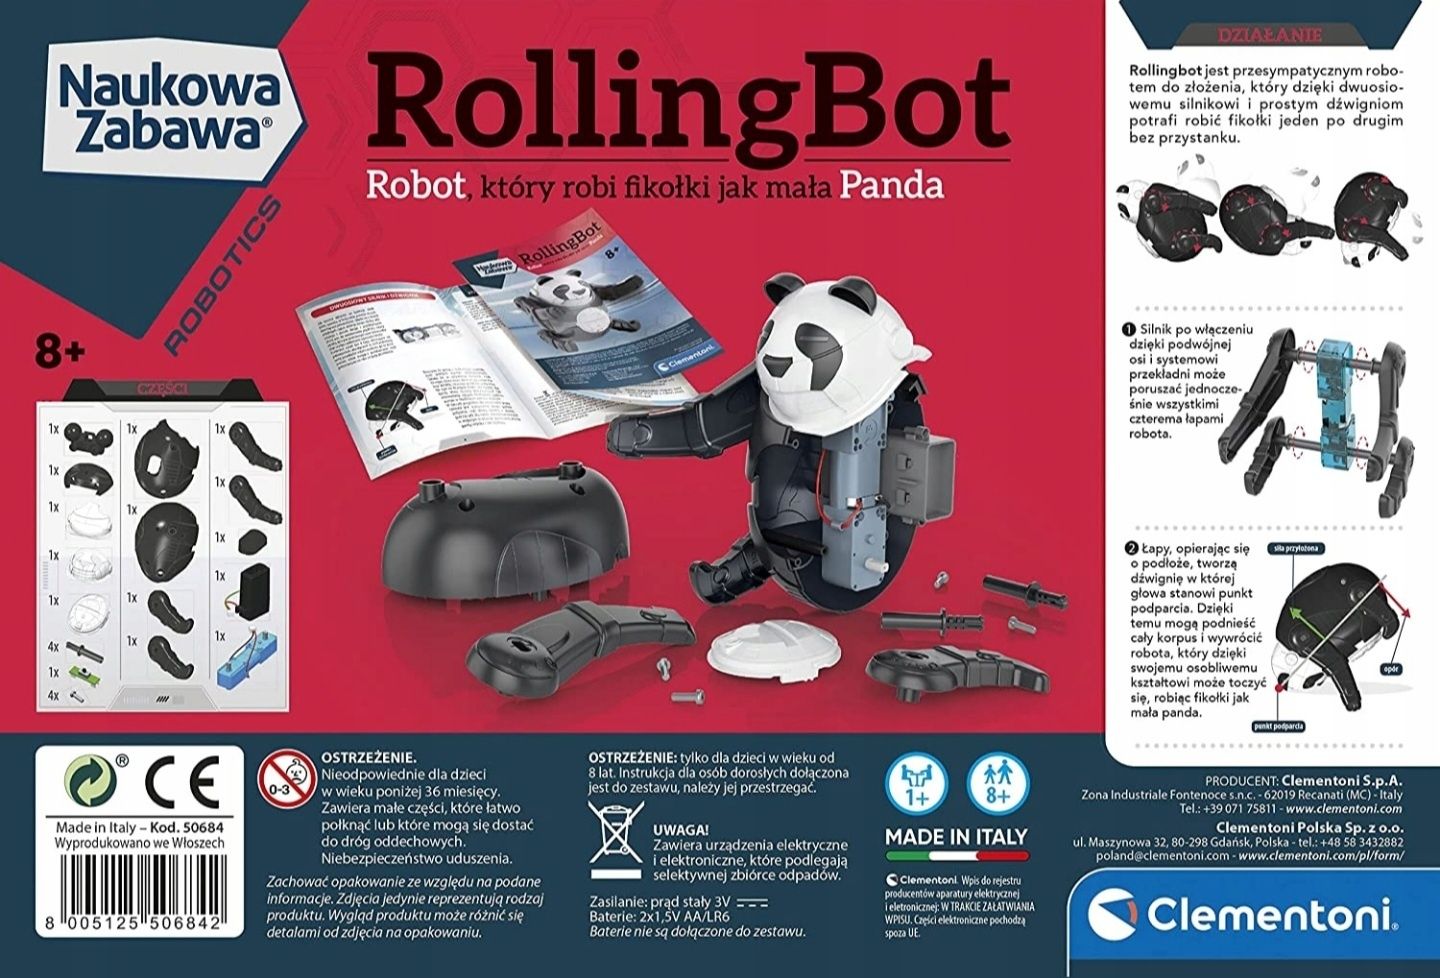 Clementoni Naukowa Zabawa Robot Panda RollingBot 50684